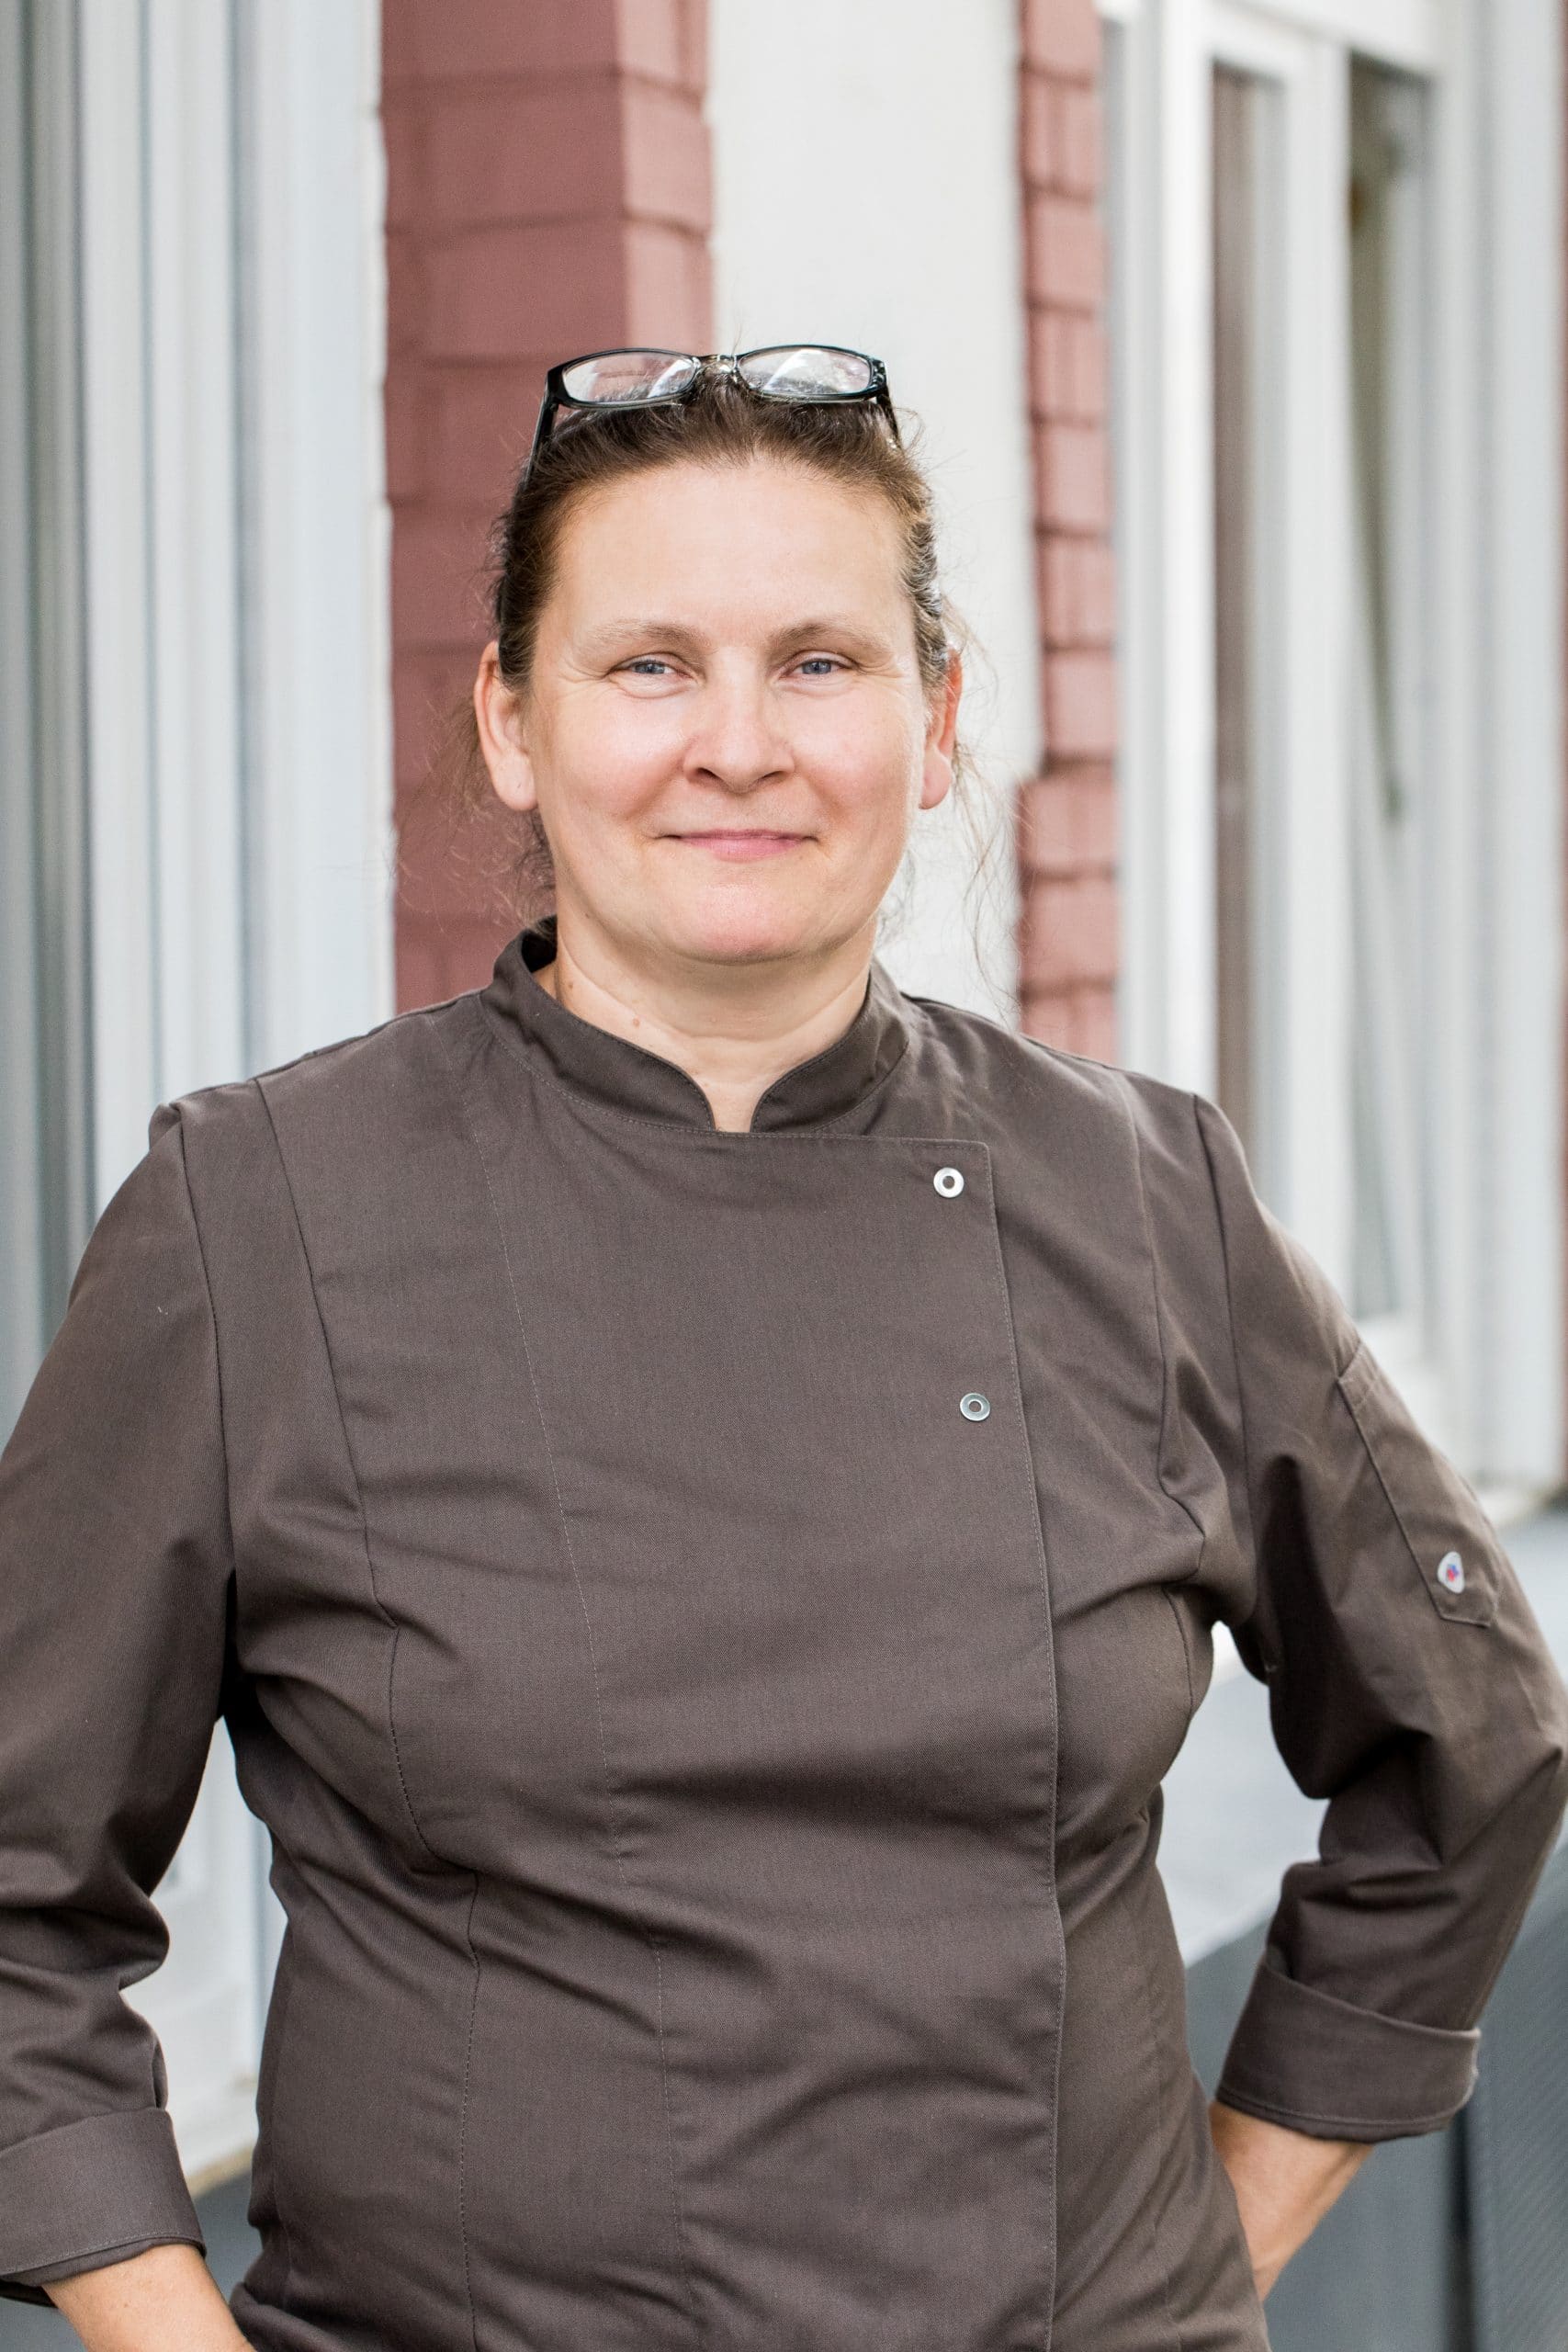 Chefköchin Brigitte Niessen leitet Kochkurse und Firmenevents im Marieneck in Köln Ehrenfeld